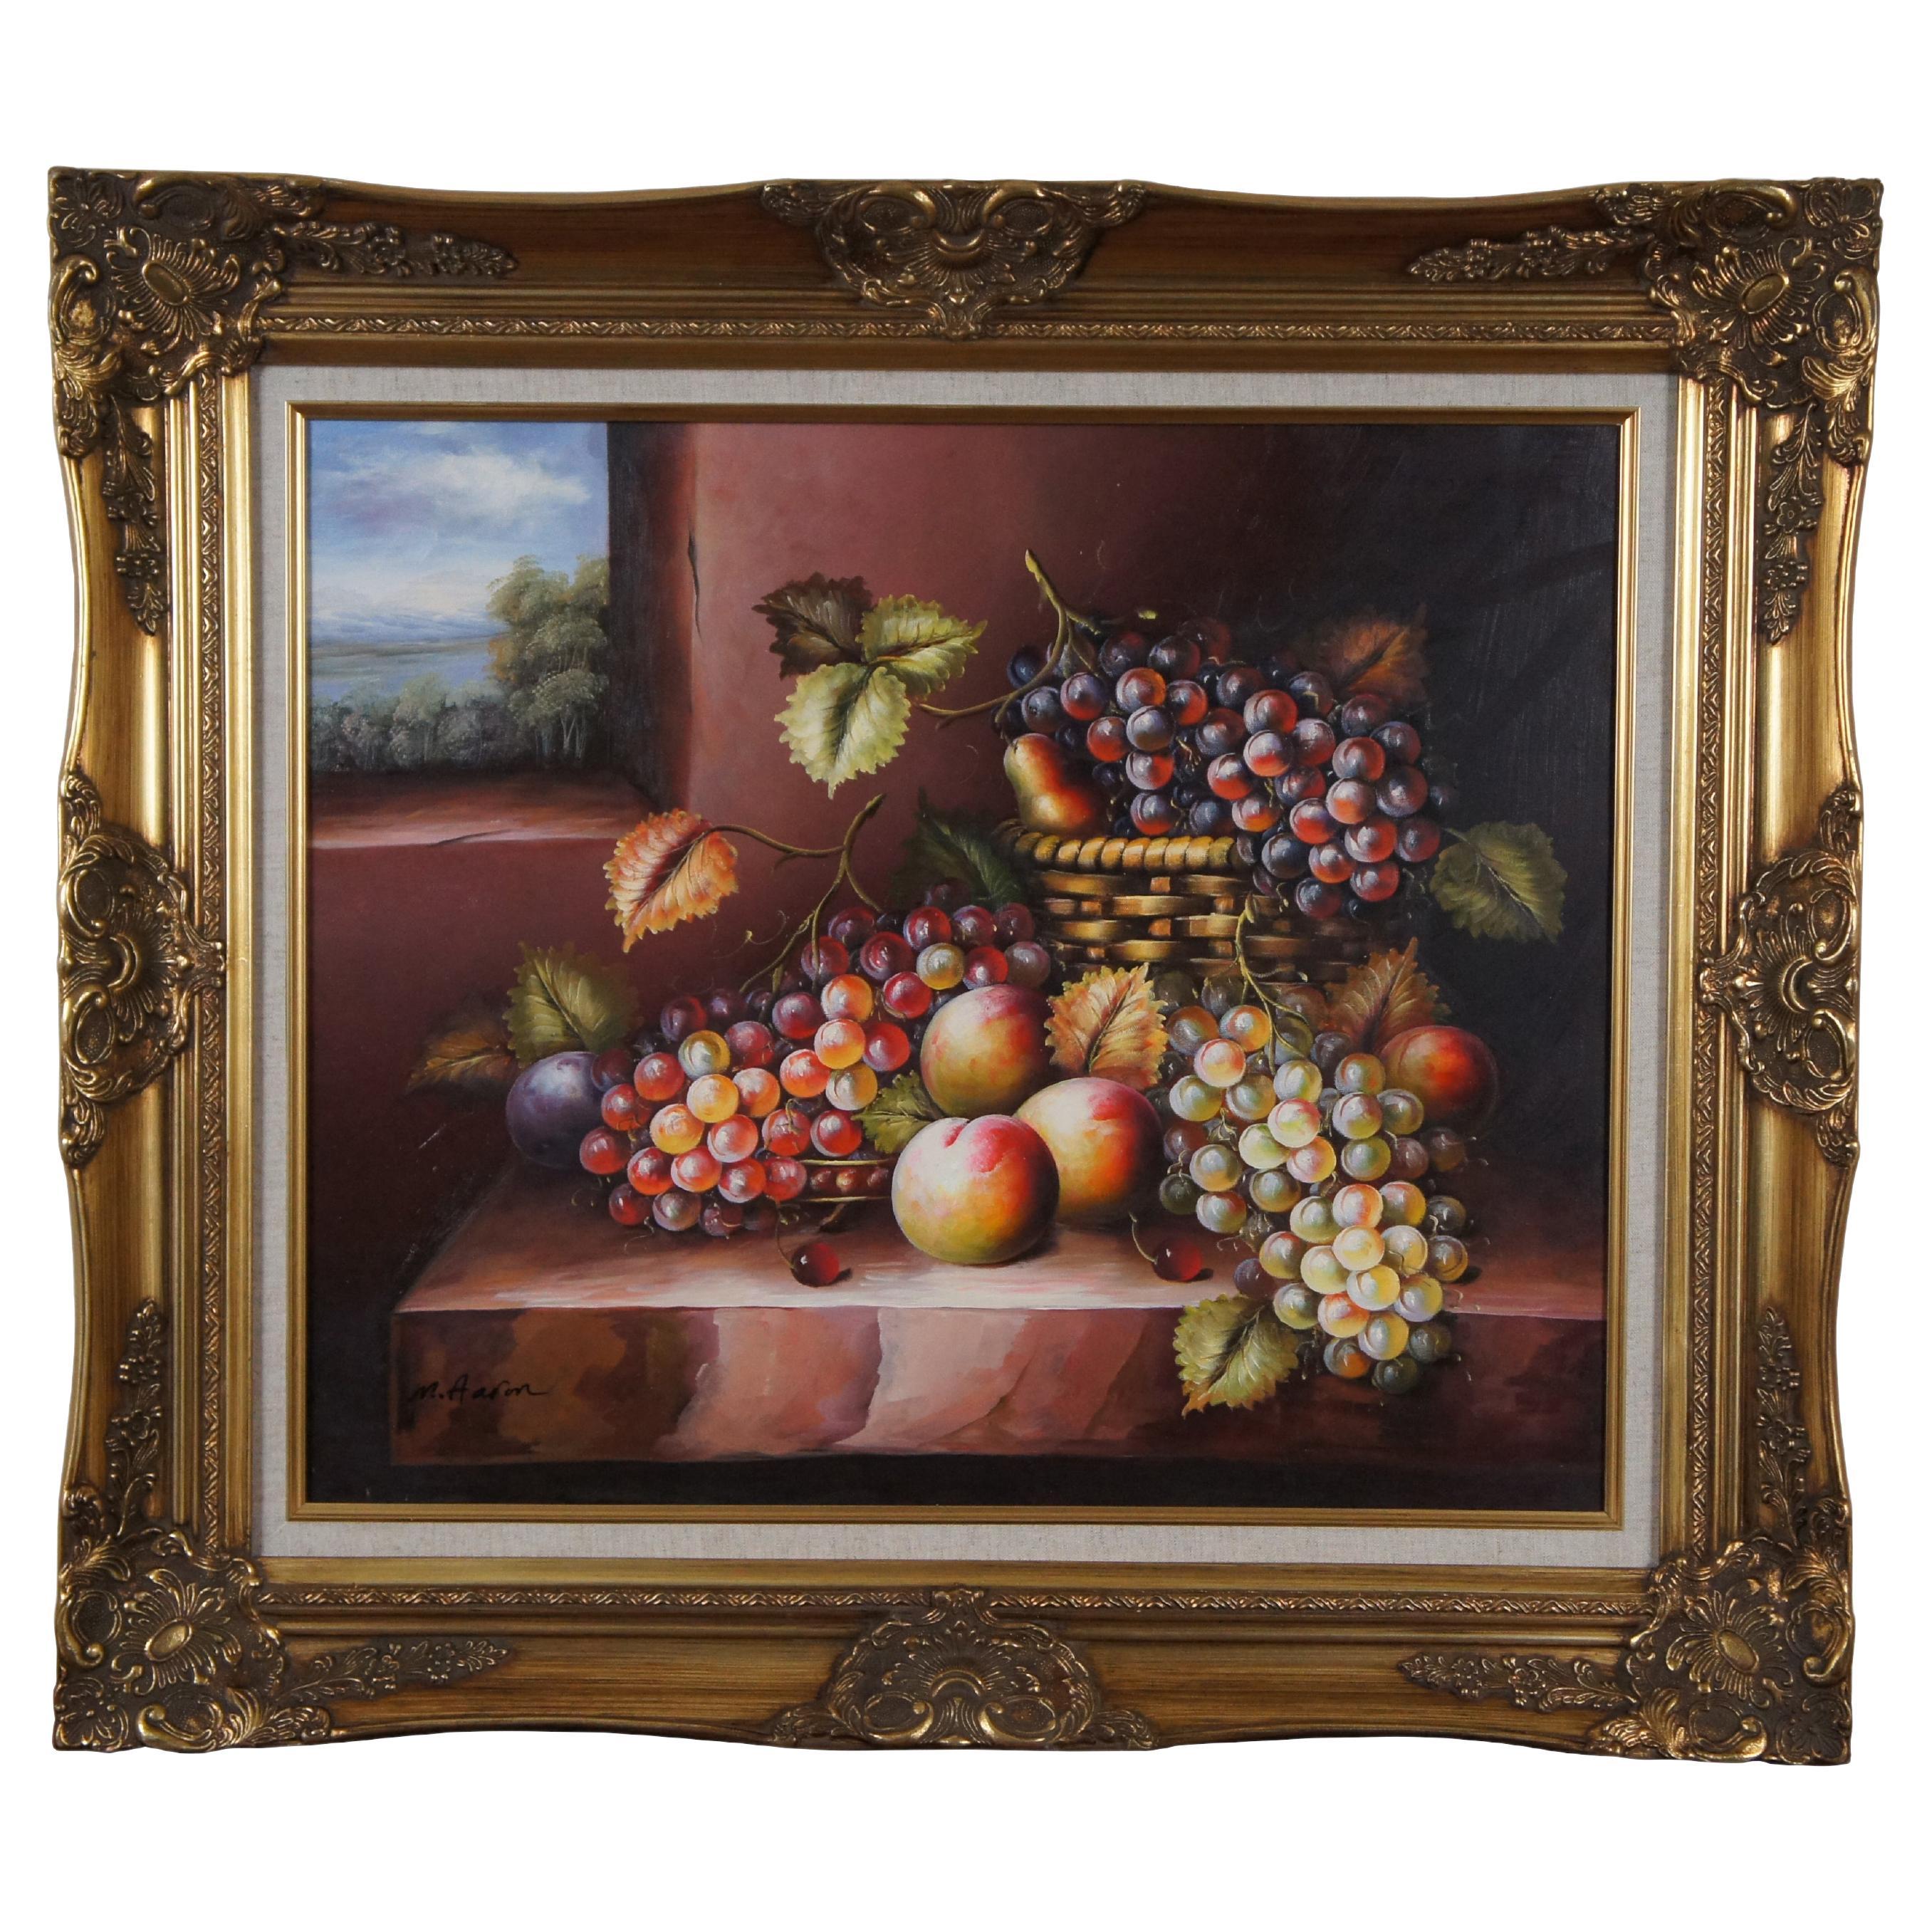 Vintage A&M Grapes Fruit Farmhouse Still Life Oil Painting on Canvas 32" (peinture à l'huile sur toile)